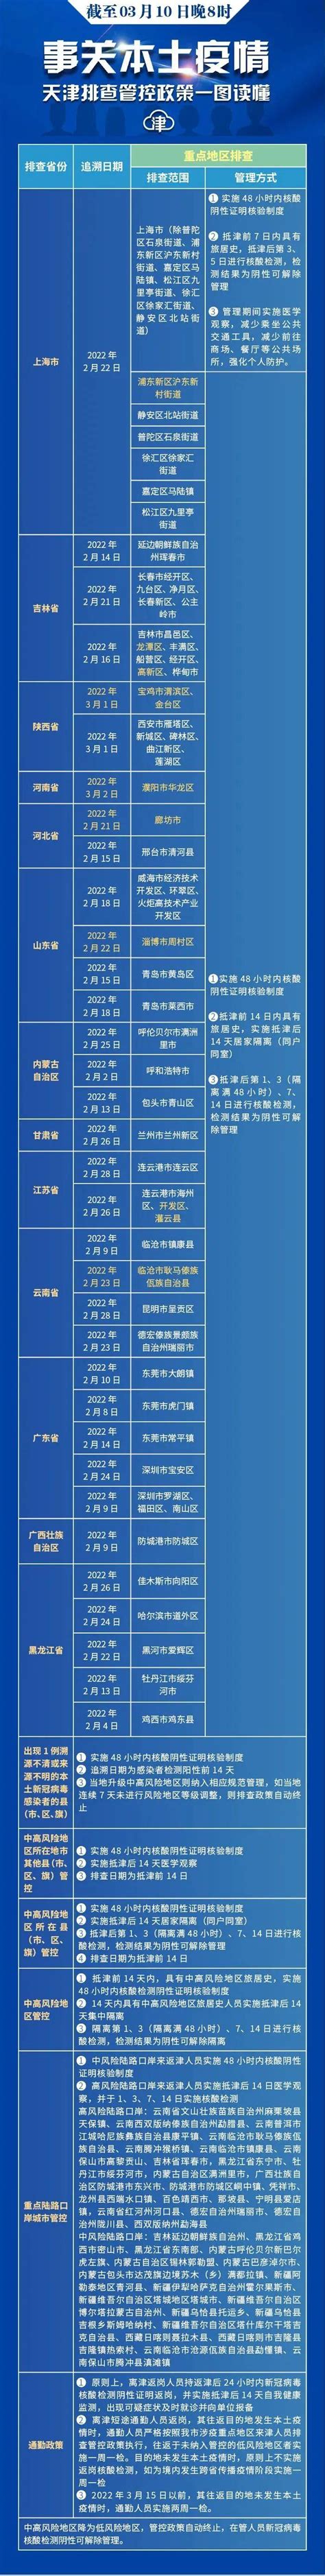 天津限号2016时间表最新:天津限行尾号查询+限行时间表 (图)-搜狐